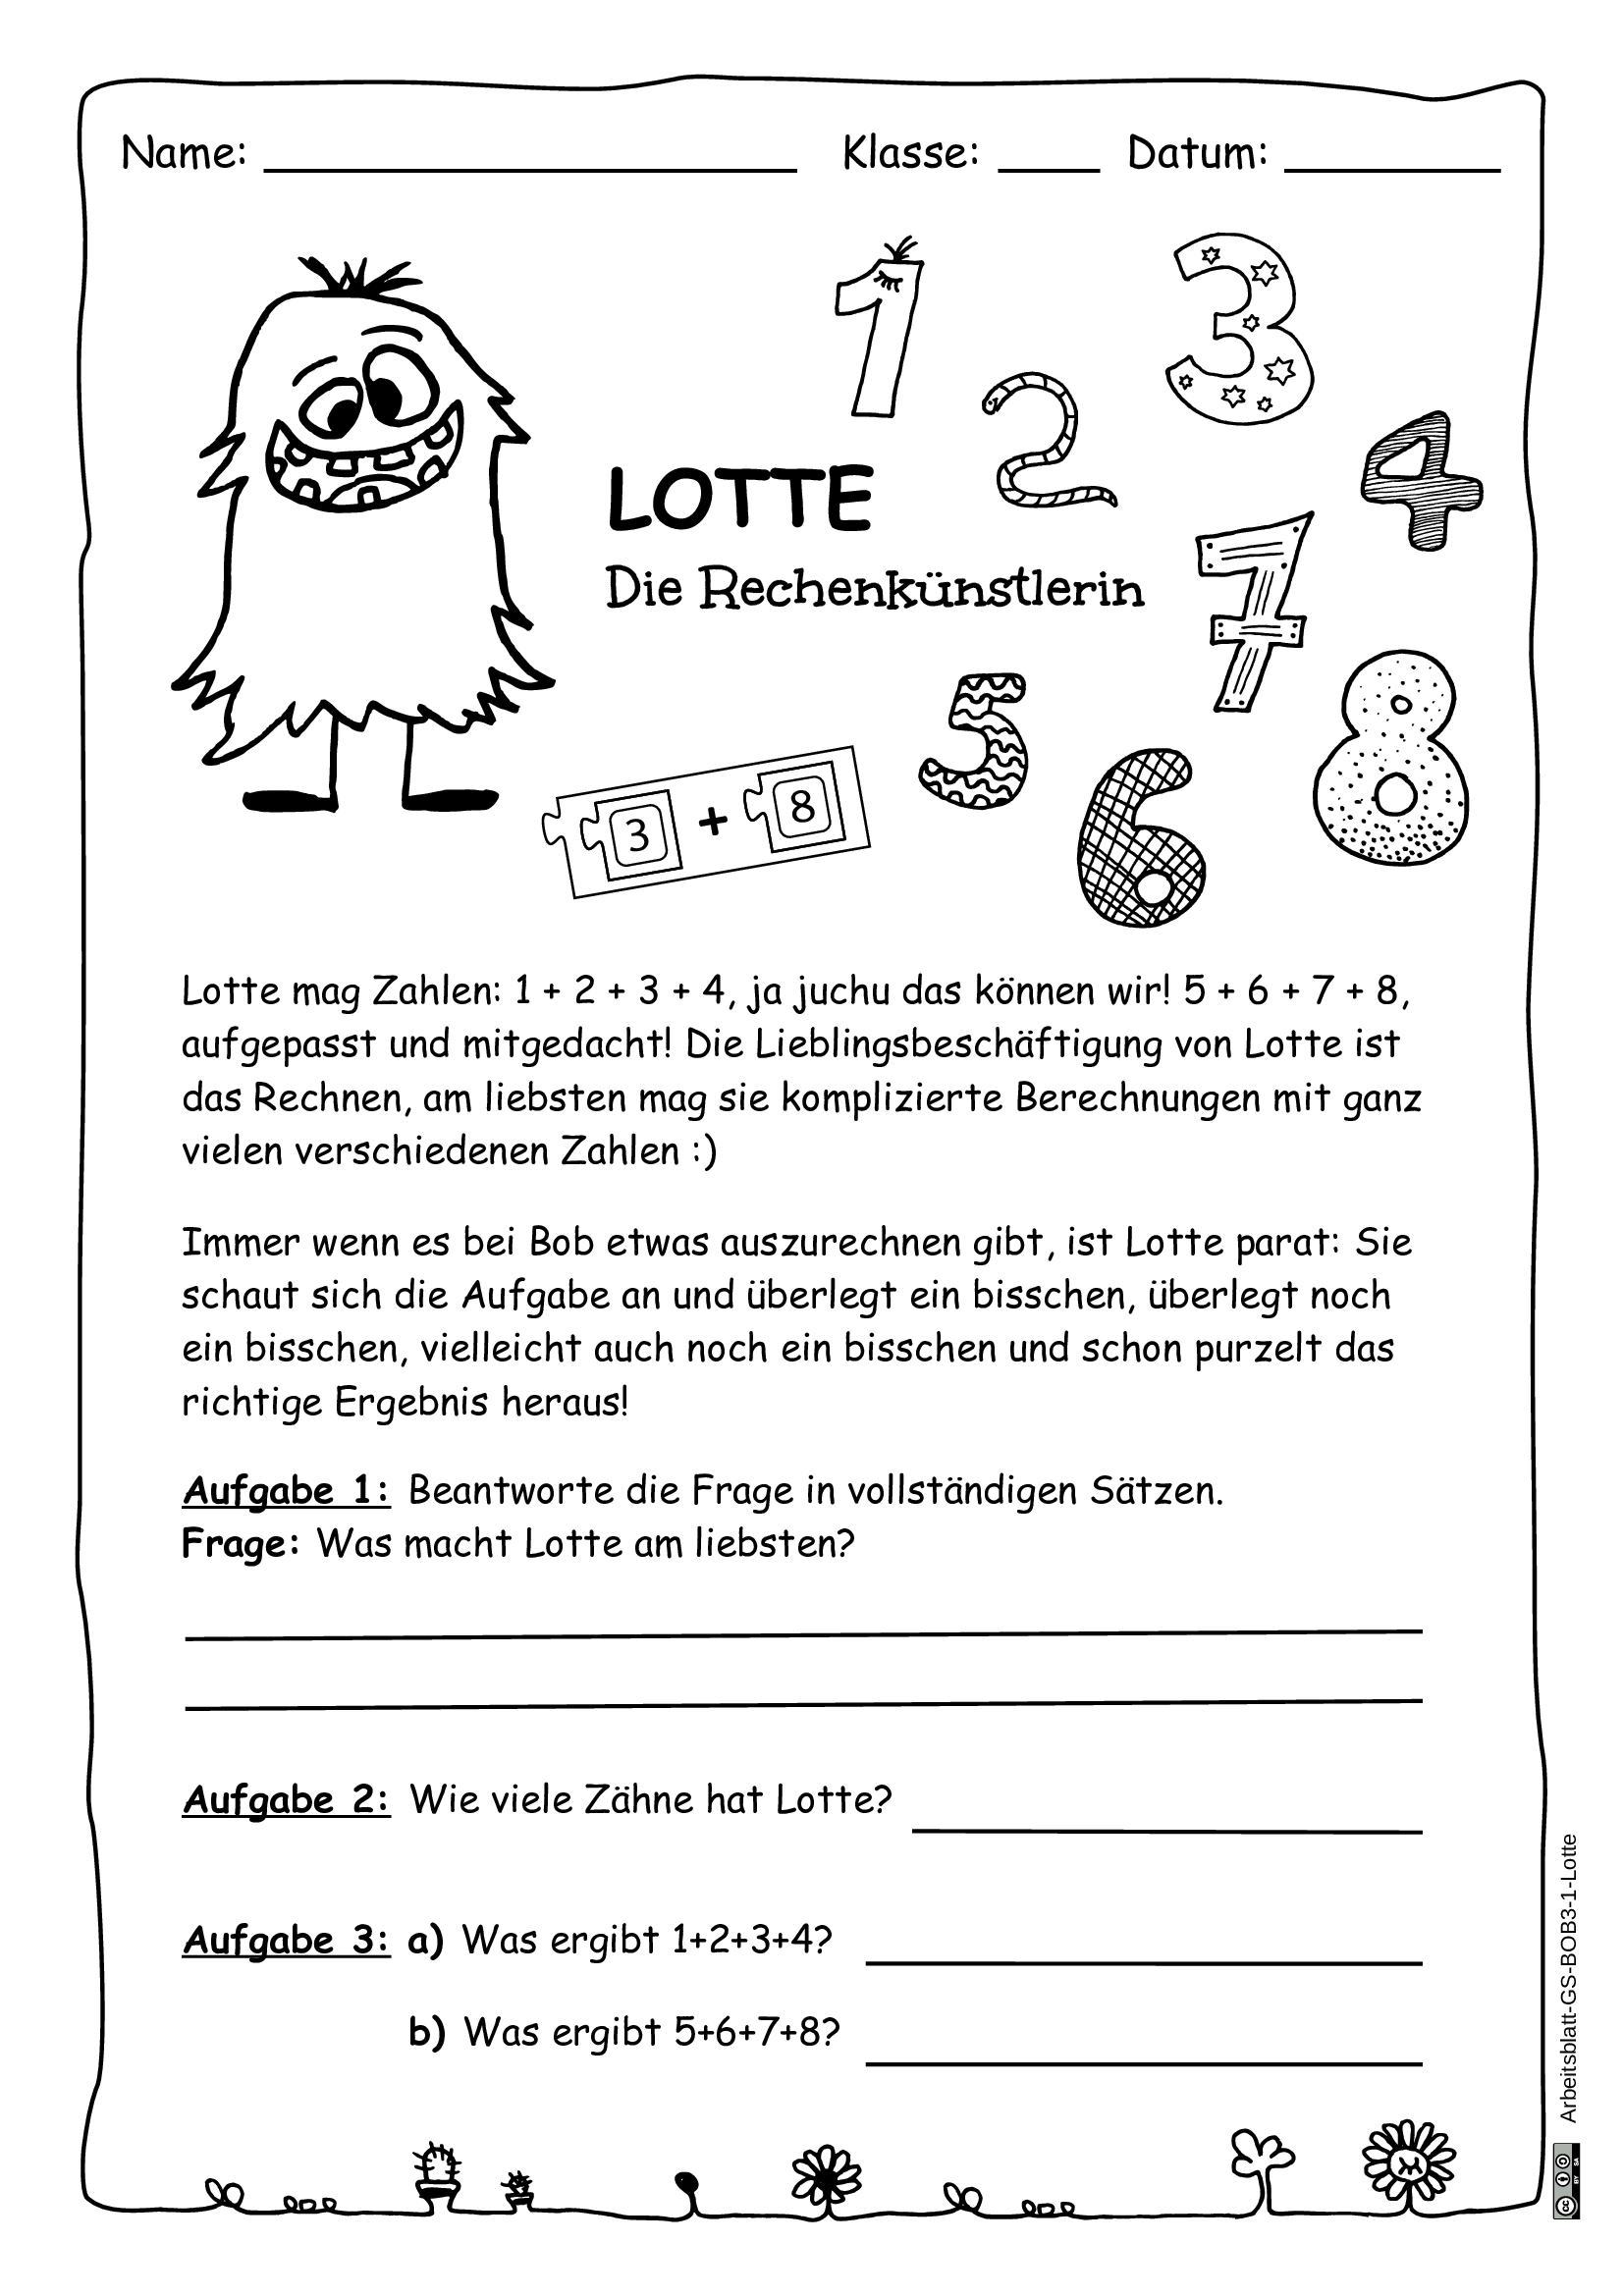 Arbeitsblatt 1 - Lotte